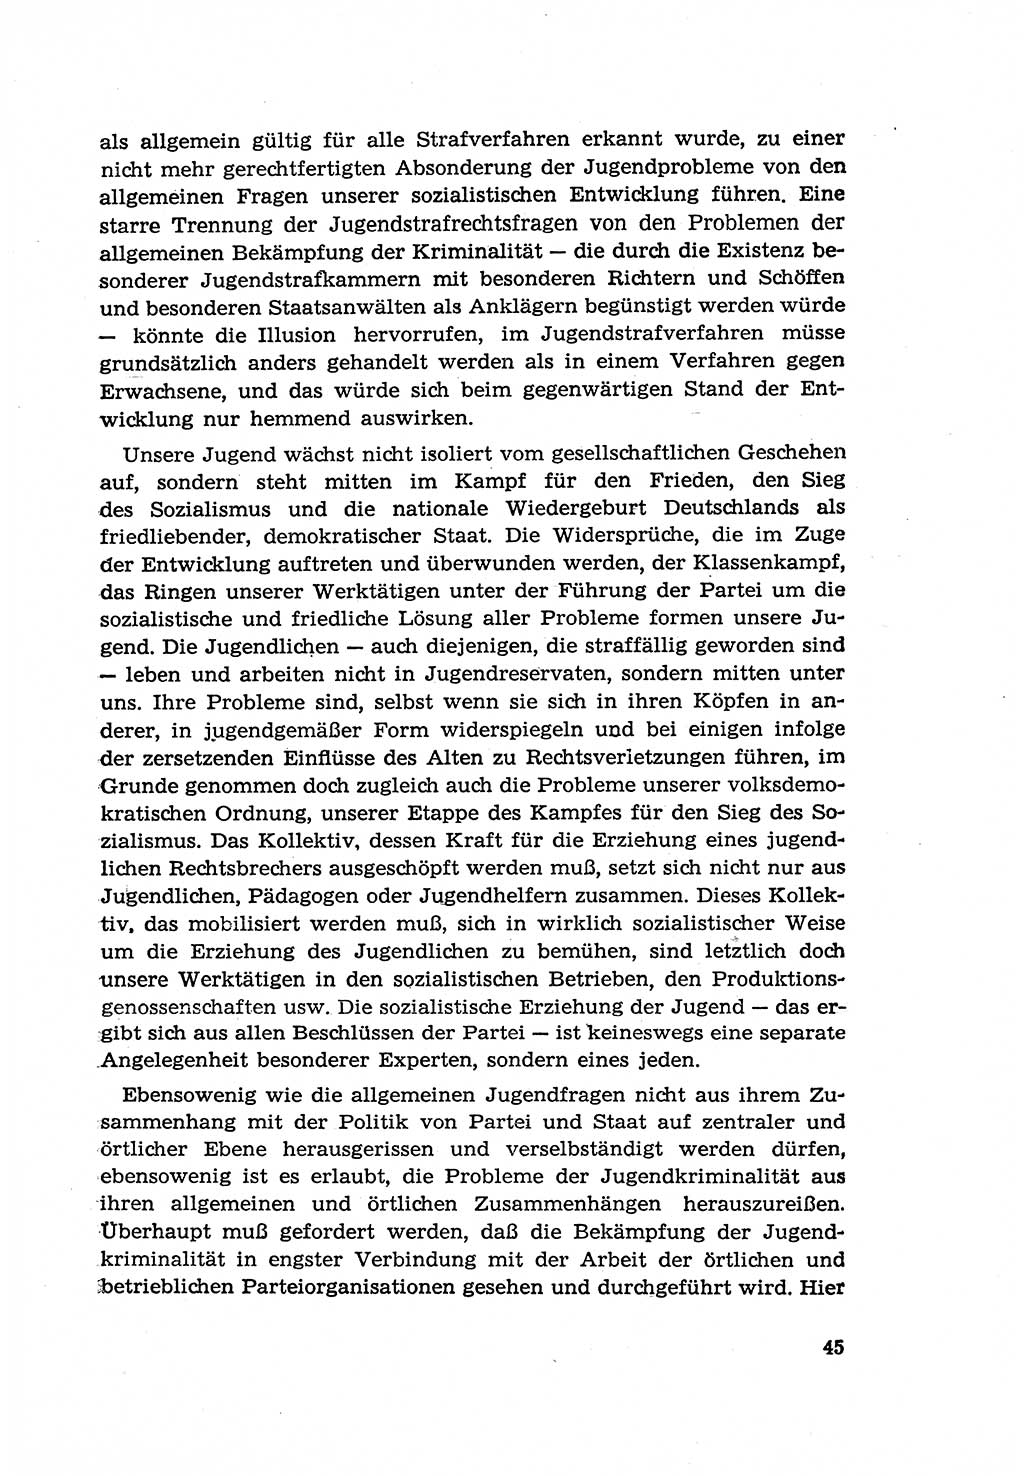 Zur Entwicklung des sozialistischen Strafrechts der Deutschen Demokratischen Republik (DDR) 1960, Seite 45 (Entw. soz. Strafr. DDR 1960, S. 45)